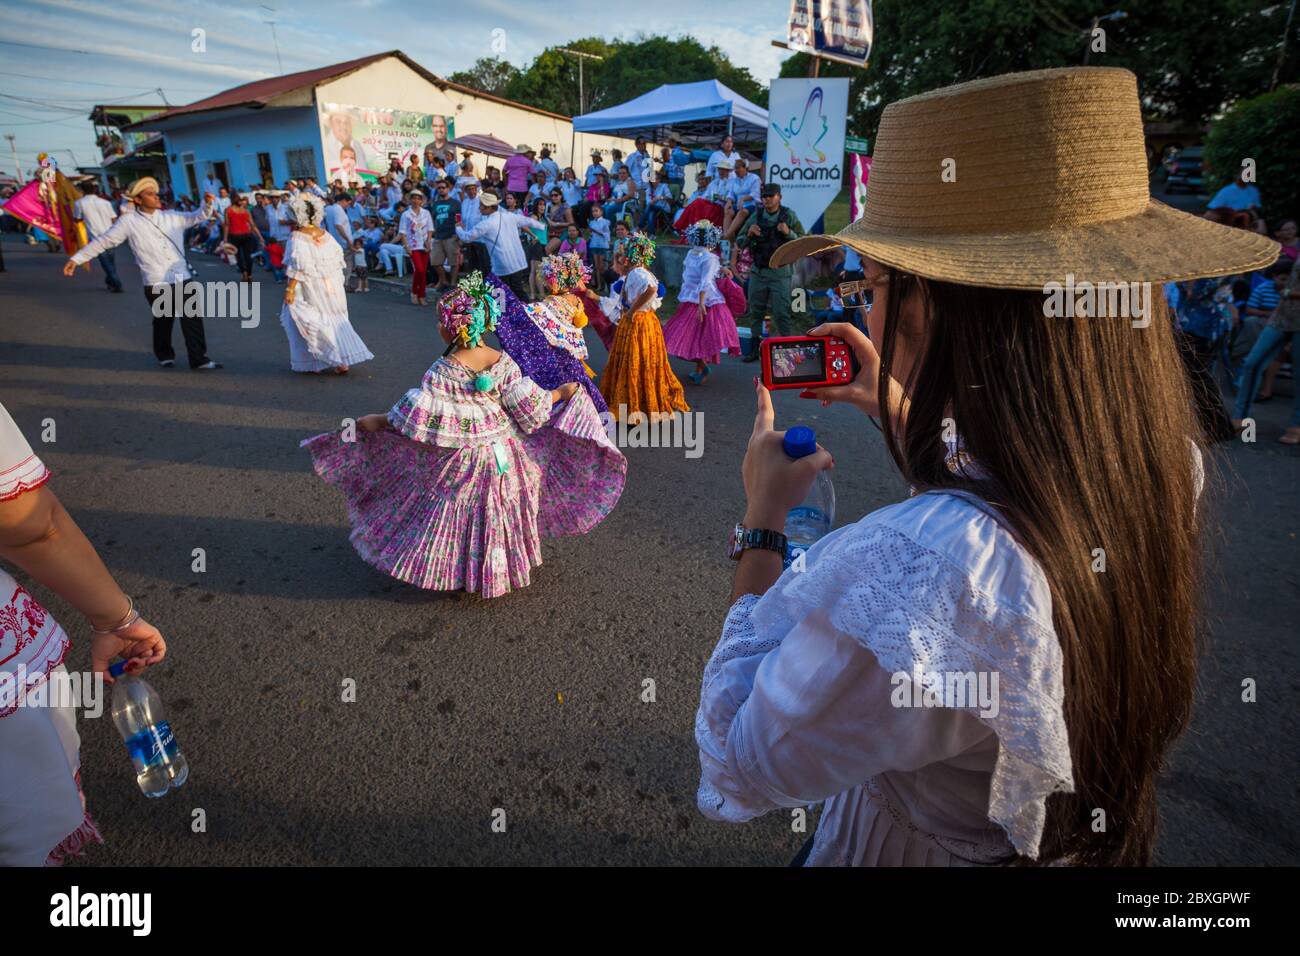 Die jährliche Veranstaltung "El desfile de las mil polleras" (tausend Polleras) in Las Tablas, Los Santos Provinz, Republik Panama. Stockfoto